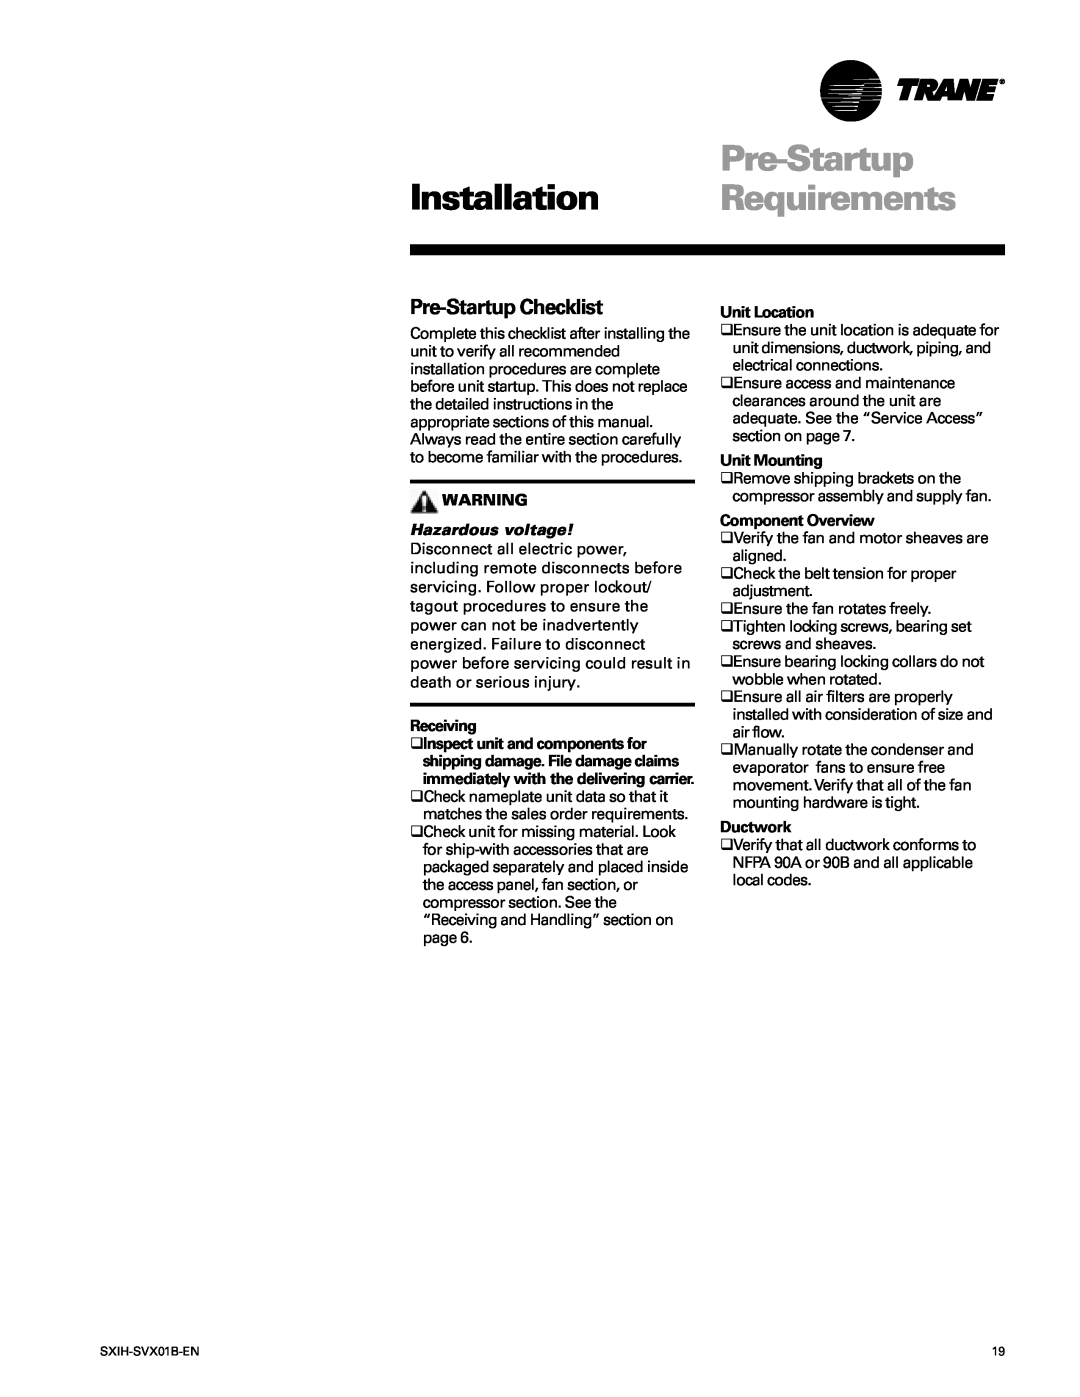 Trane SCIH manual Installation Requirements, Pre-StartupChecklist 